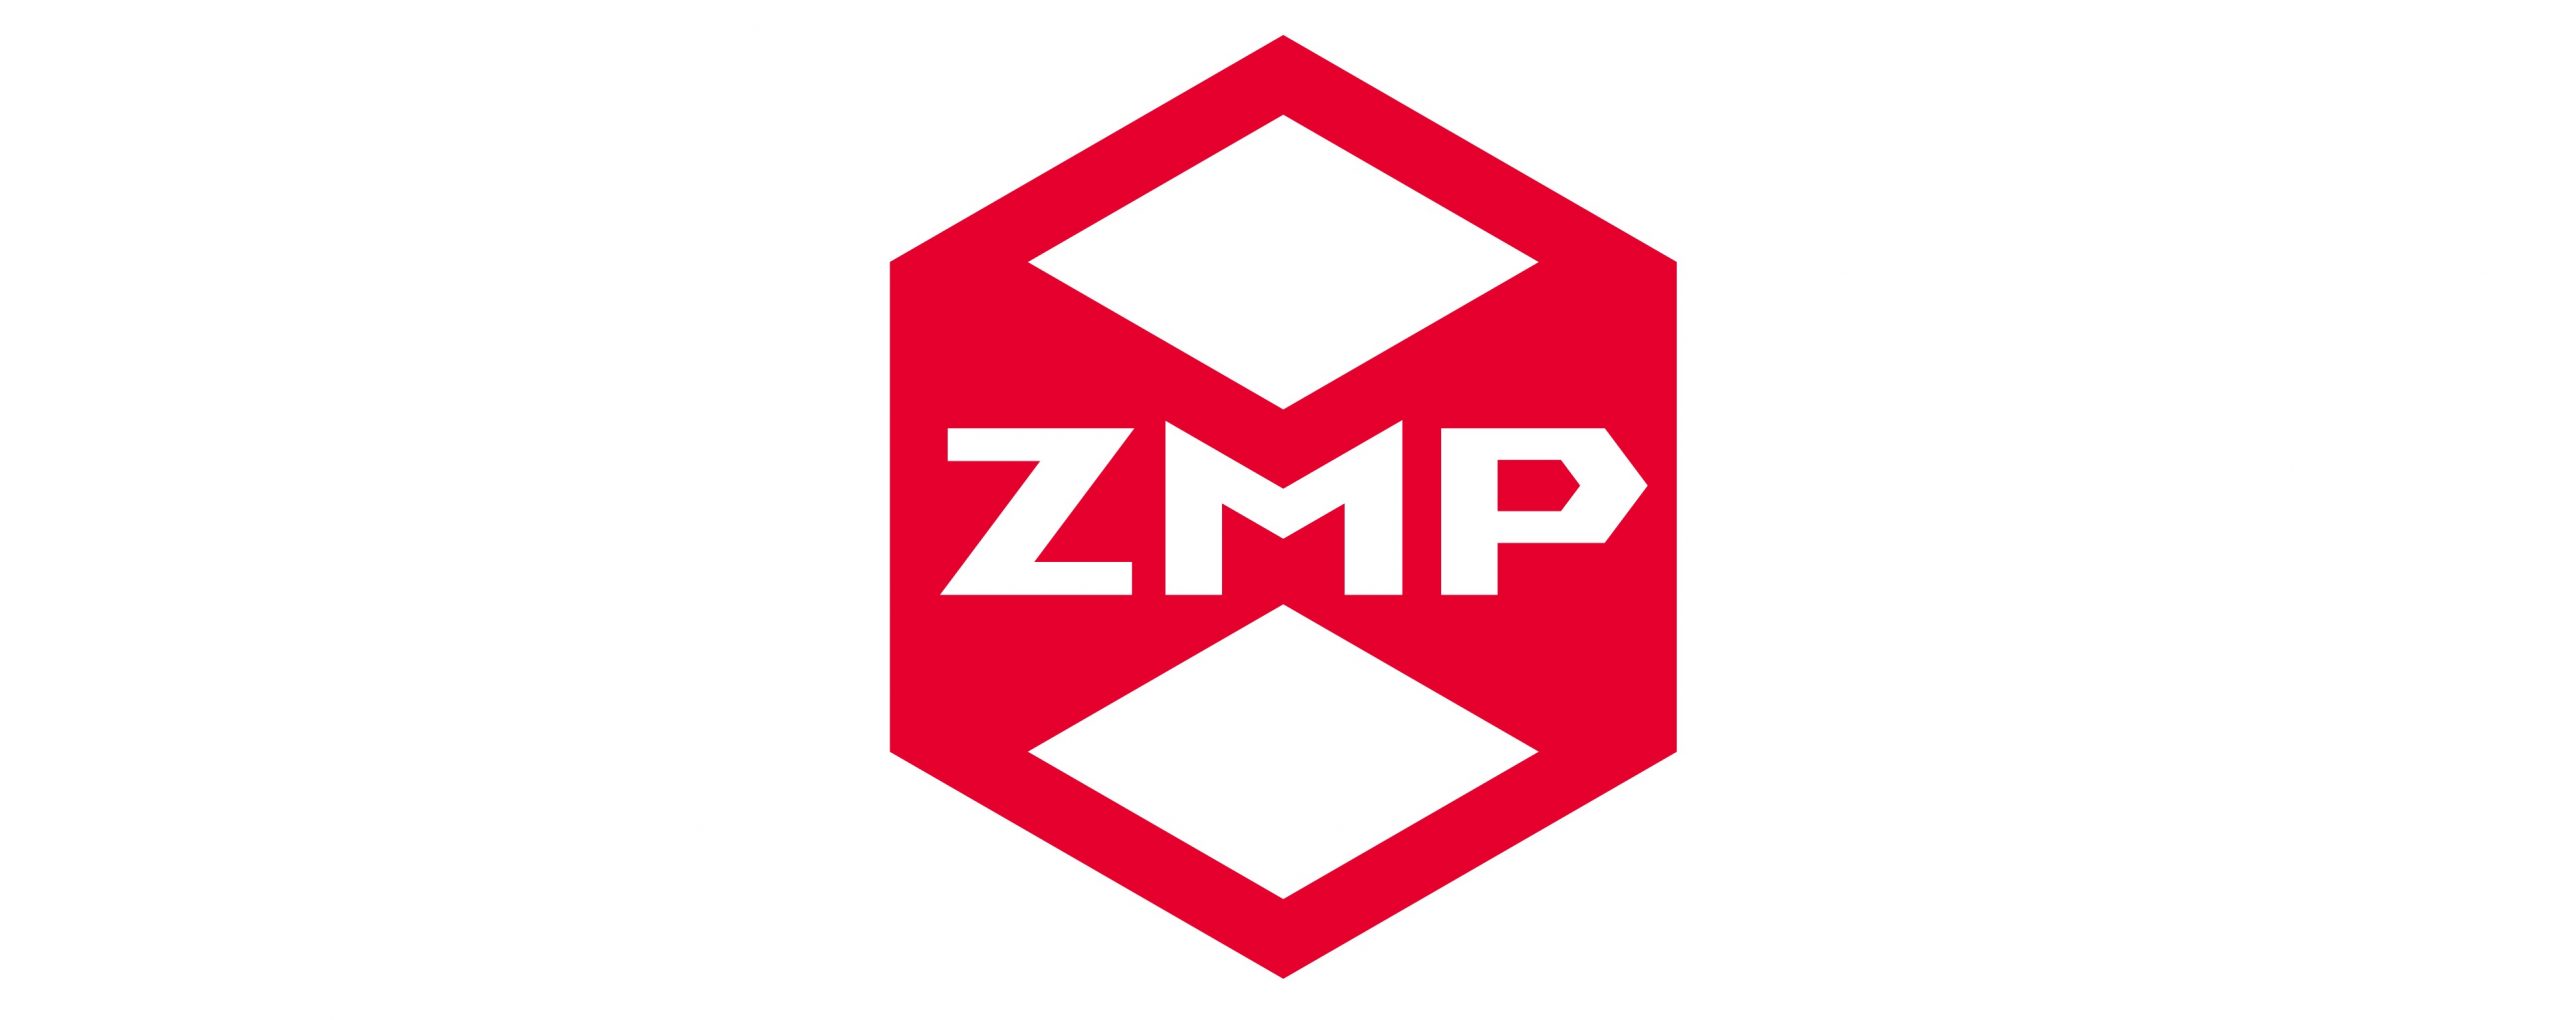 株式会社ZMP様の第３者割当増資に際し、発行価格の算定を実施しました